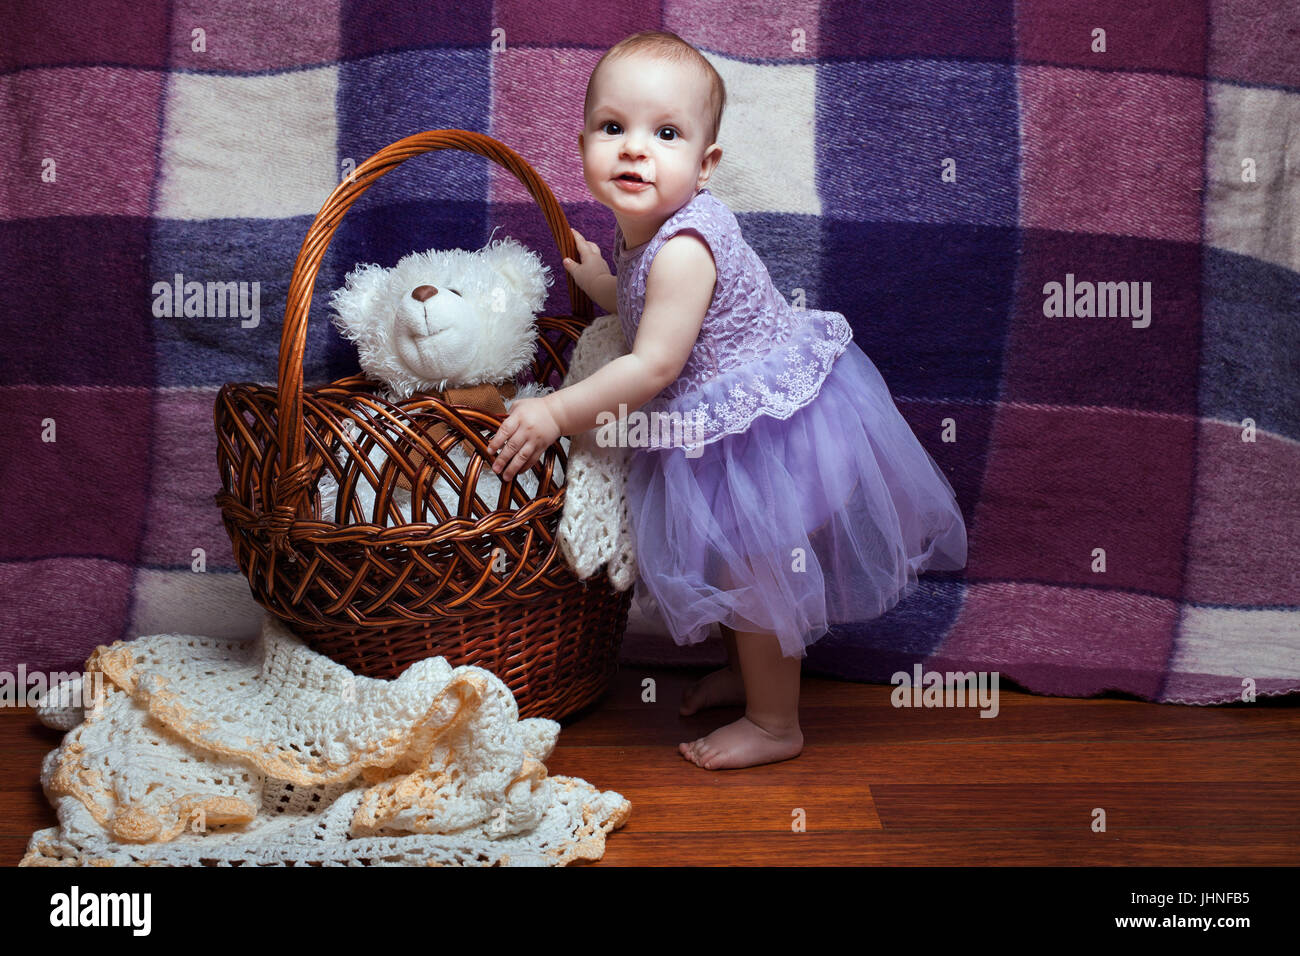 Niedliche kleine Mädchen in einem lila Kleid steht in der Nähe der Weidenkorb Stockfoto